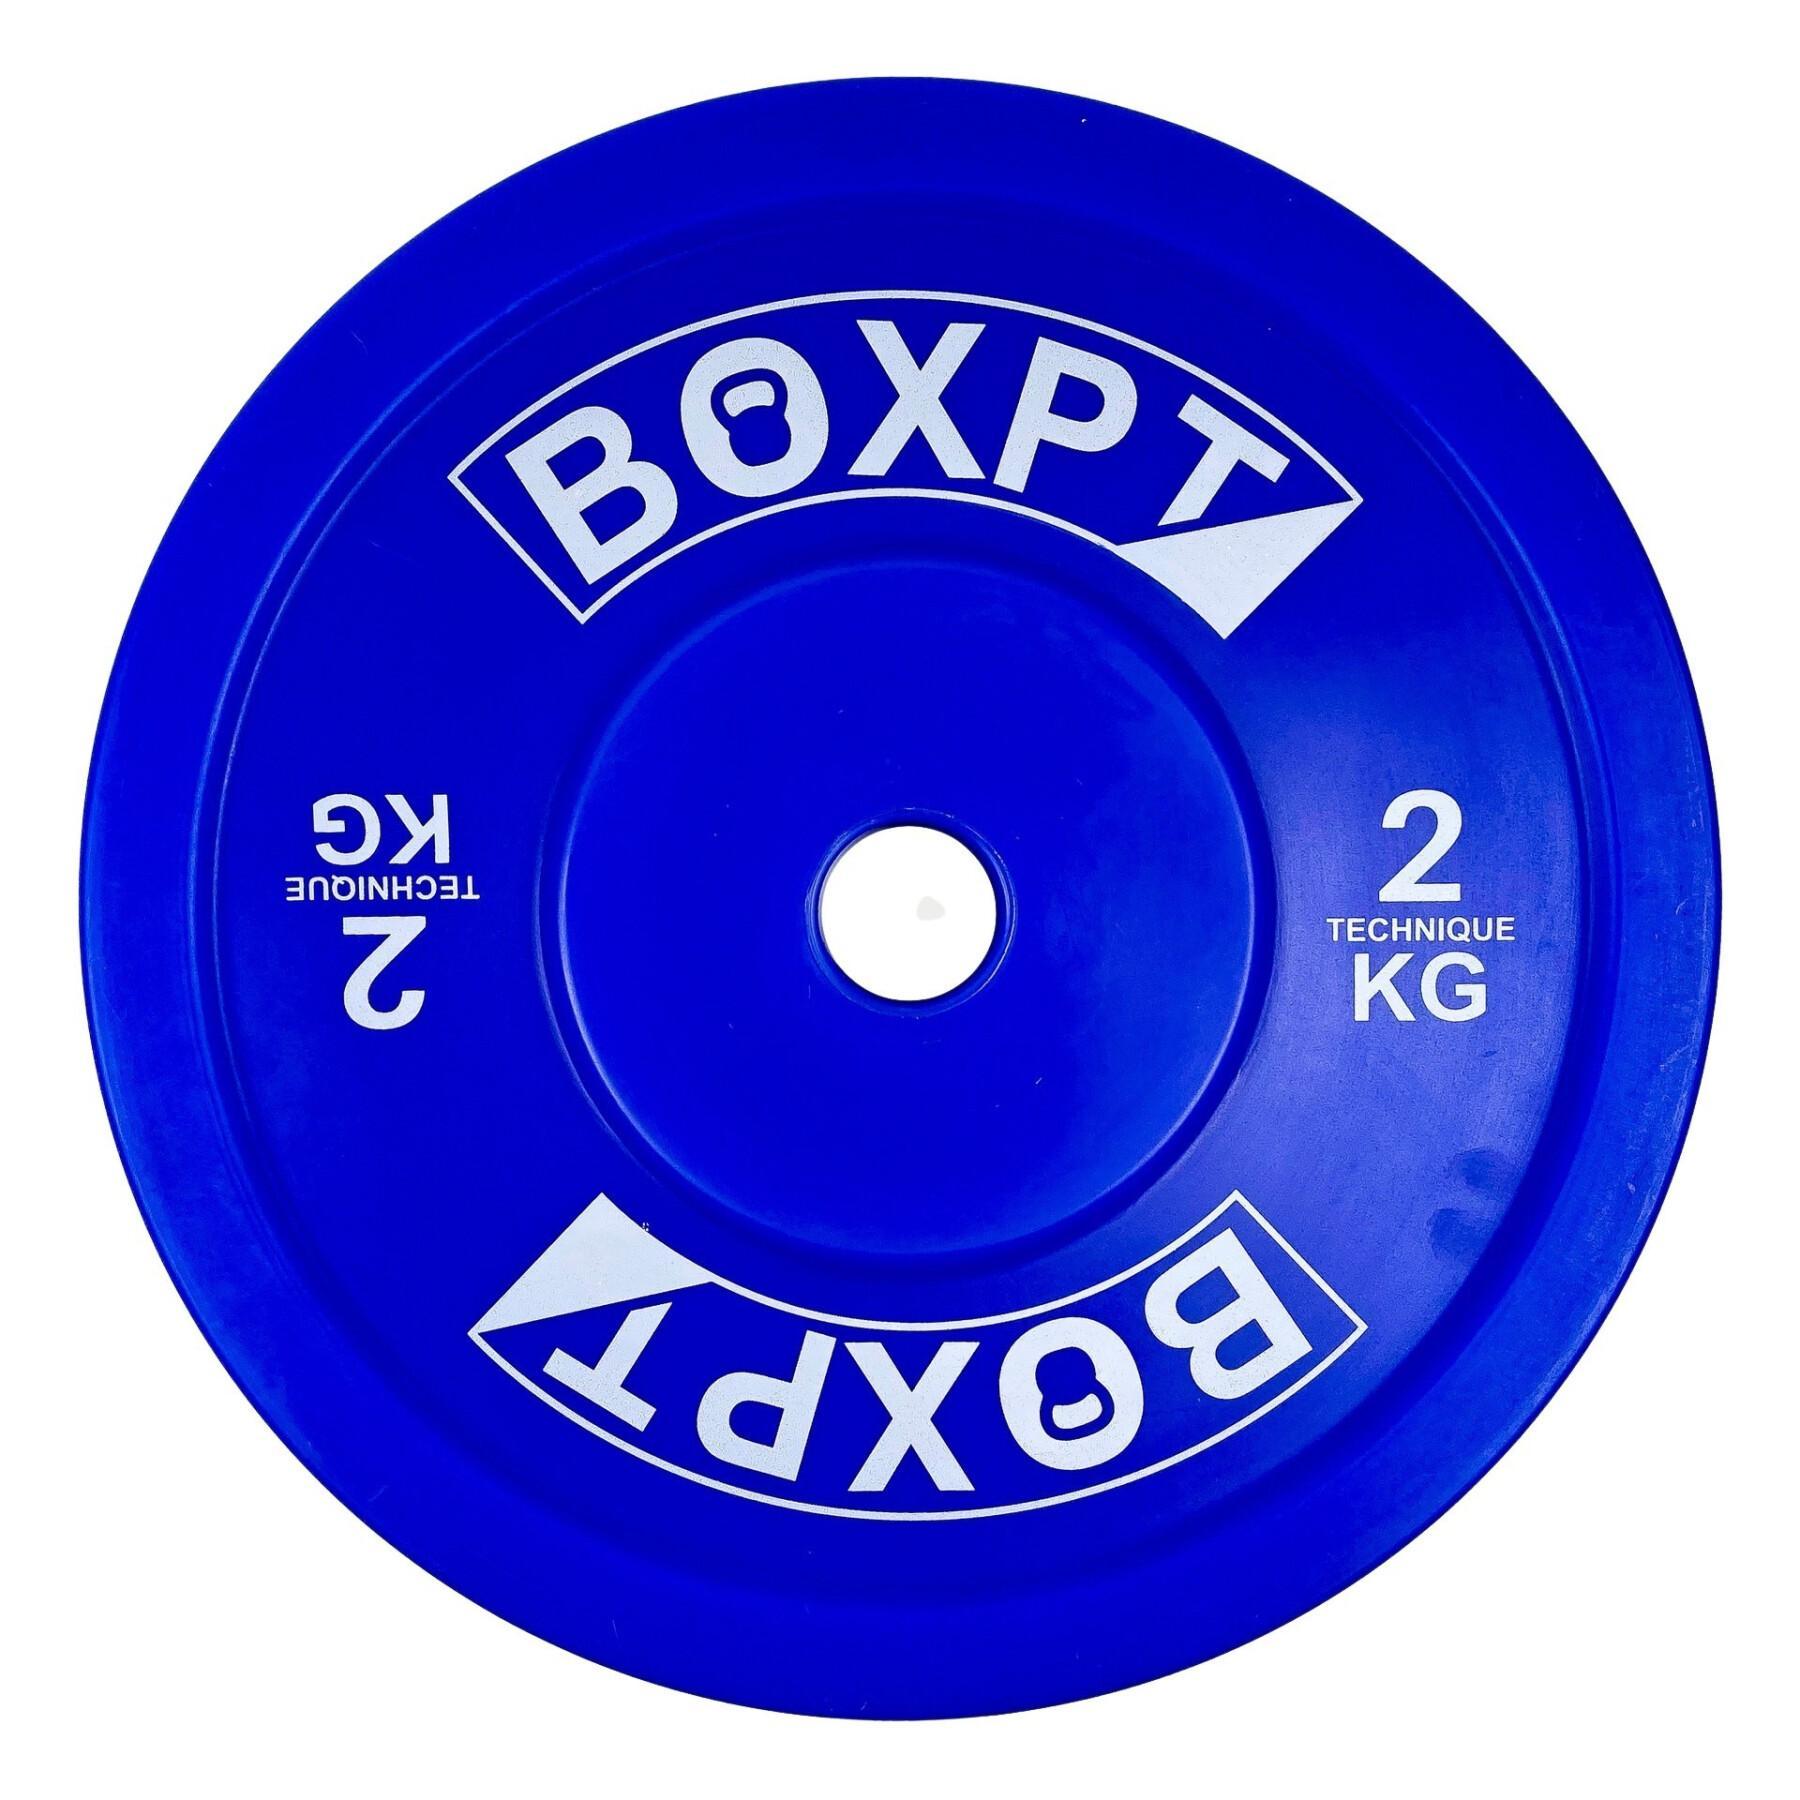 Dysk kulturystyczny Boxpt Technique - 2 kg